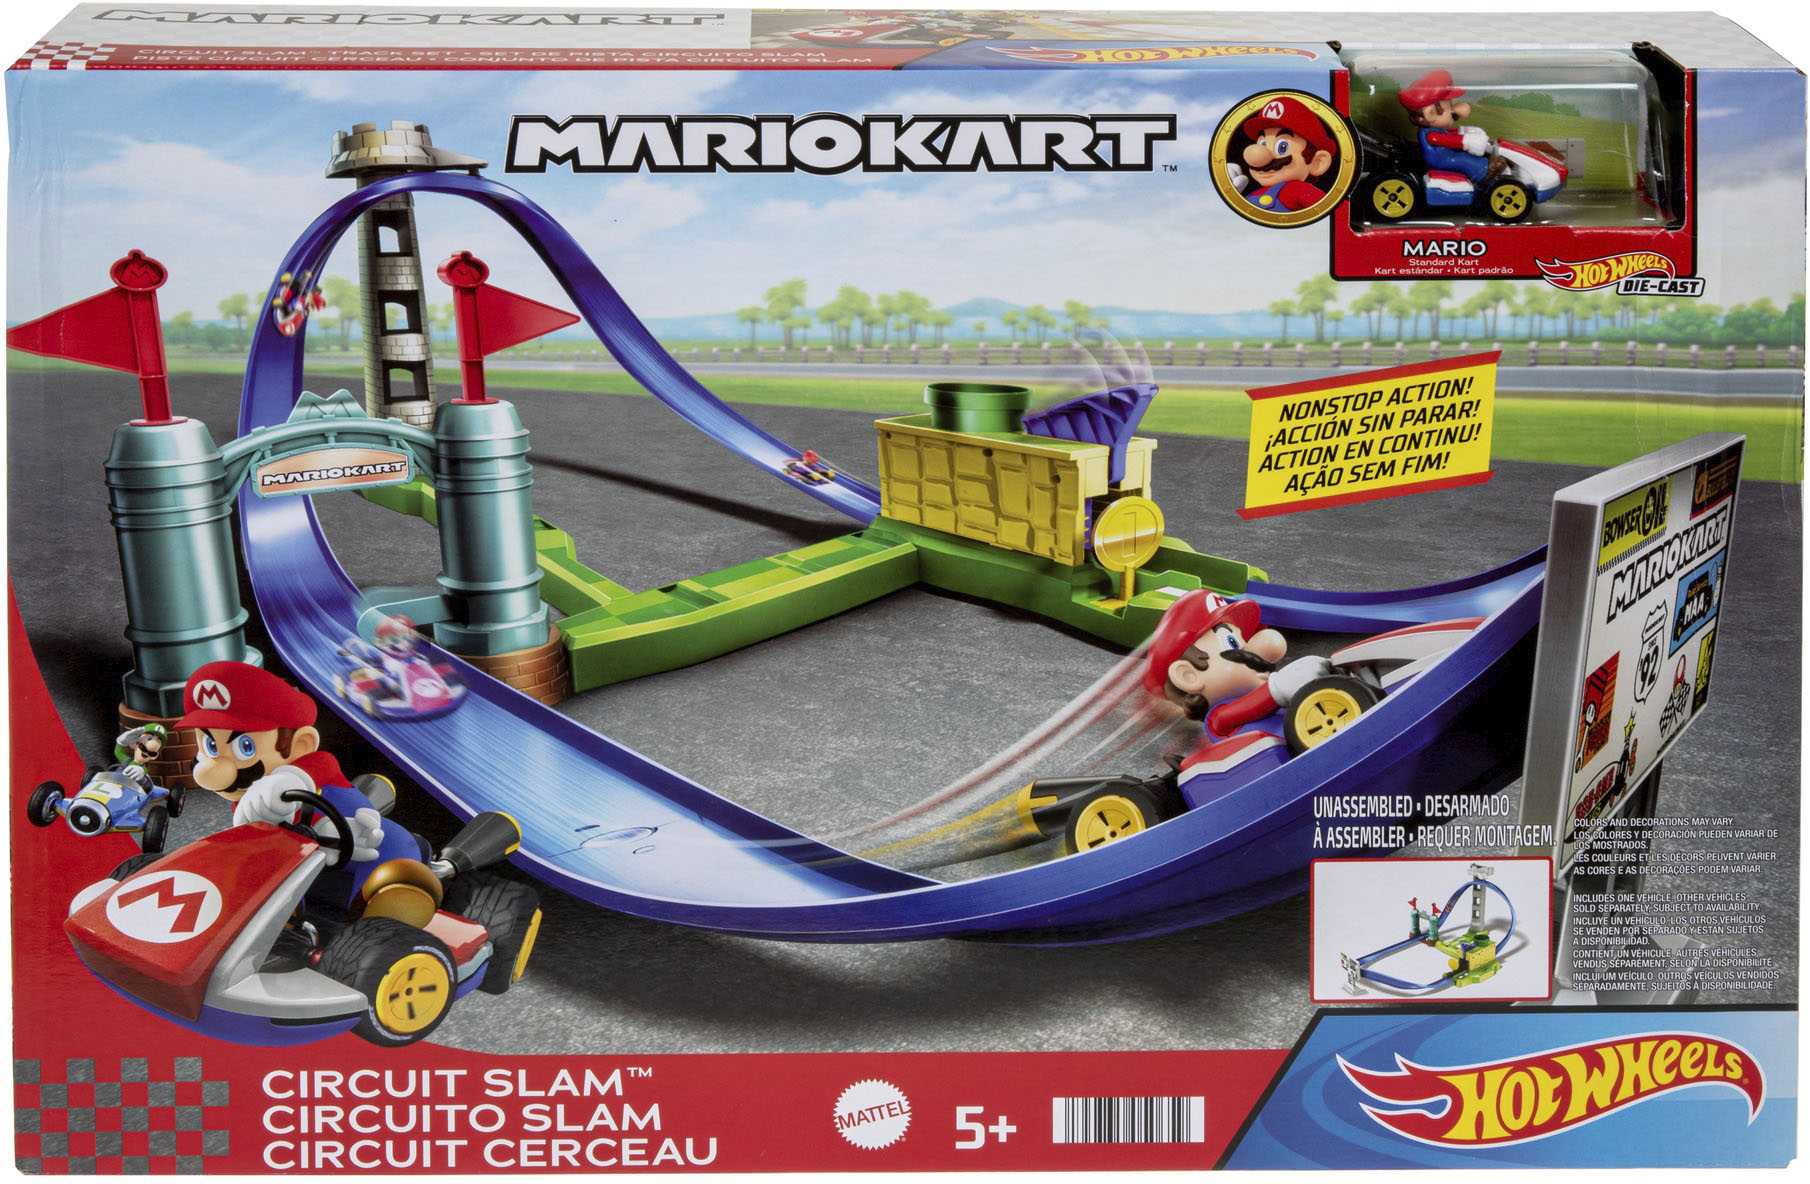 Super Mario Kart Racers Wave 5 Set of 4 Figures